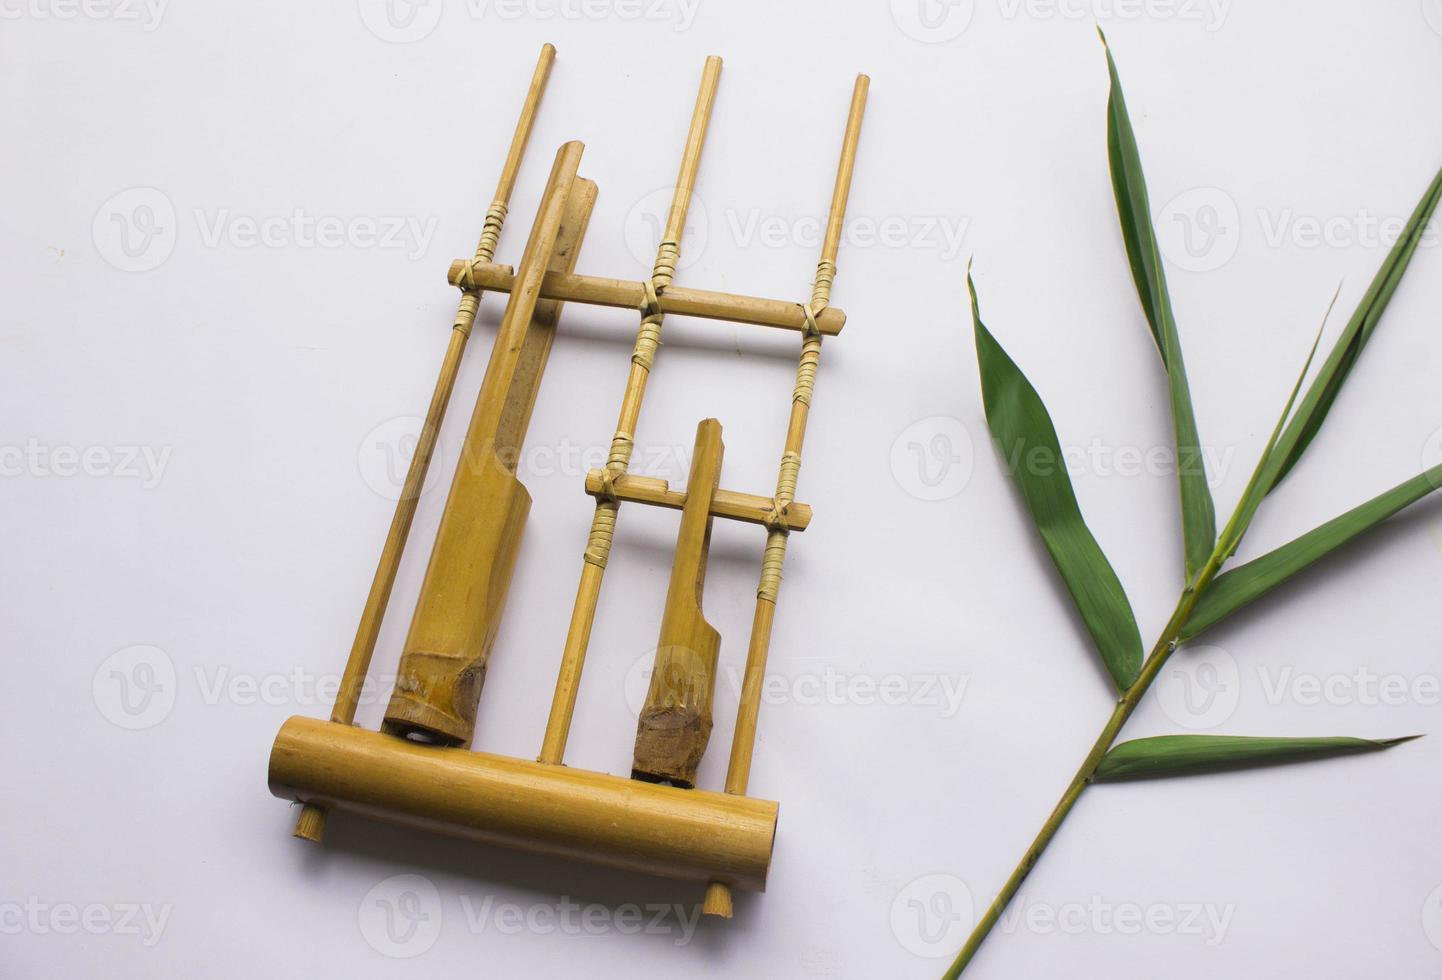 angklung, das traditionelle sundanesische Musikinstrument aus Bambus. isoliert auf weißem Hintergrund foto